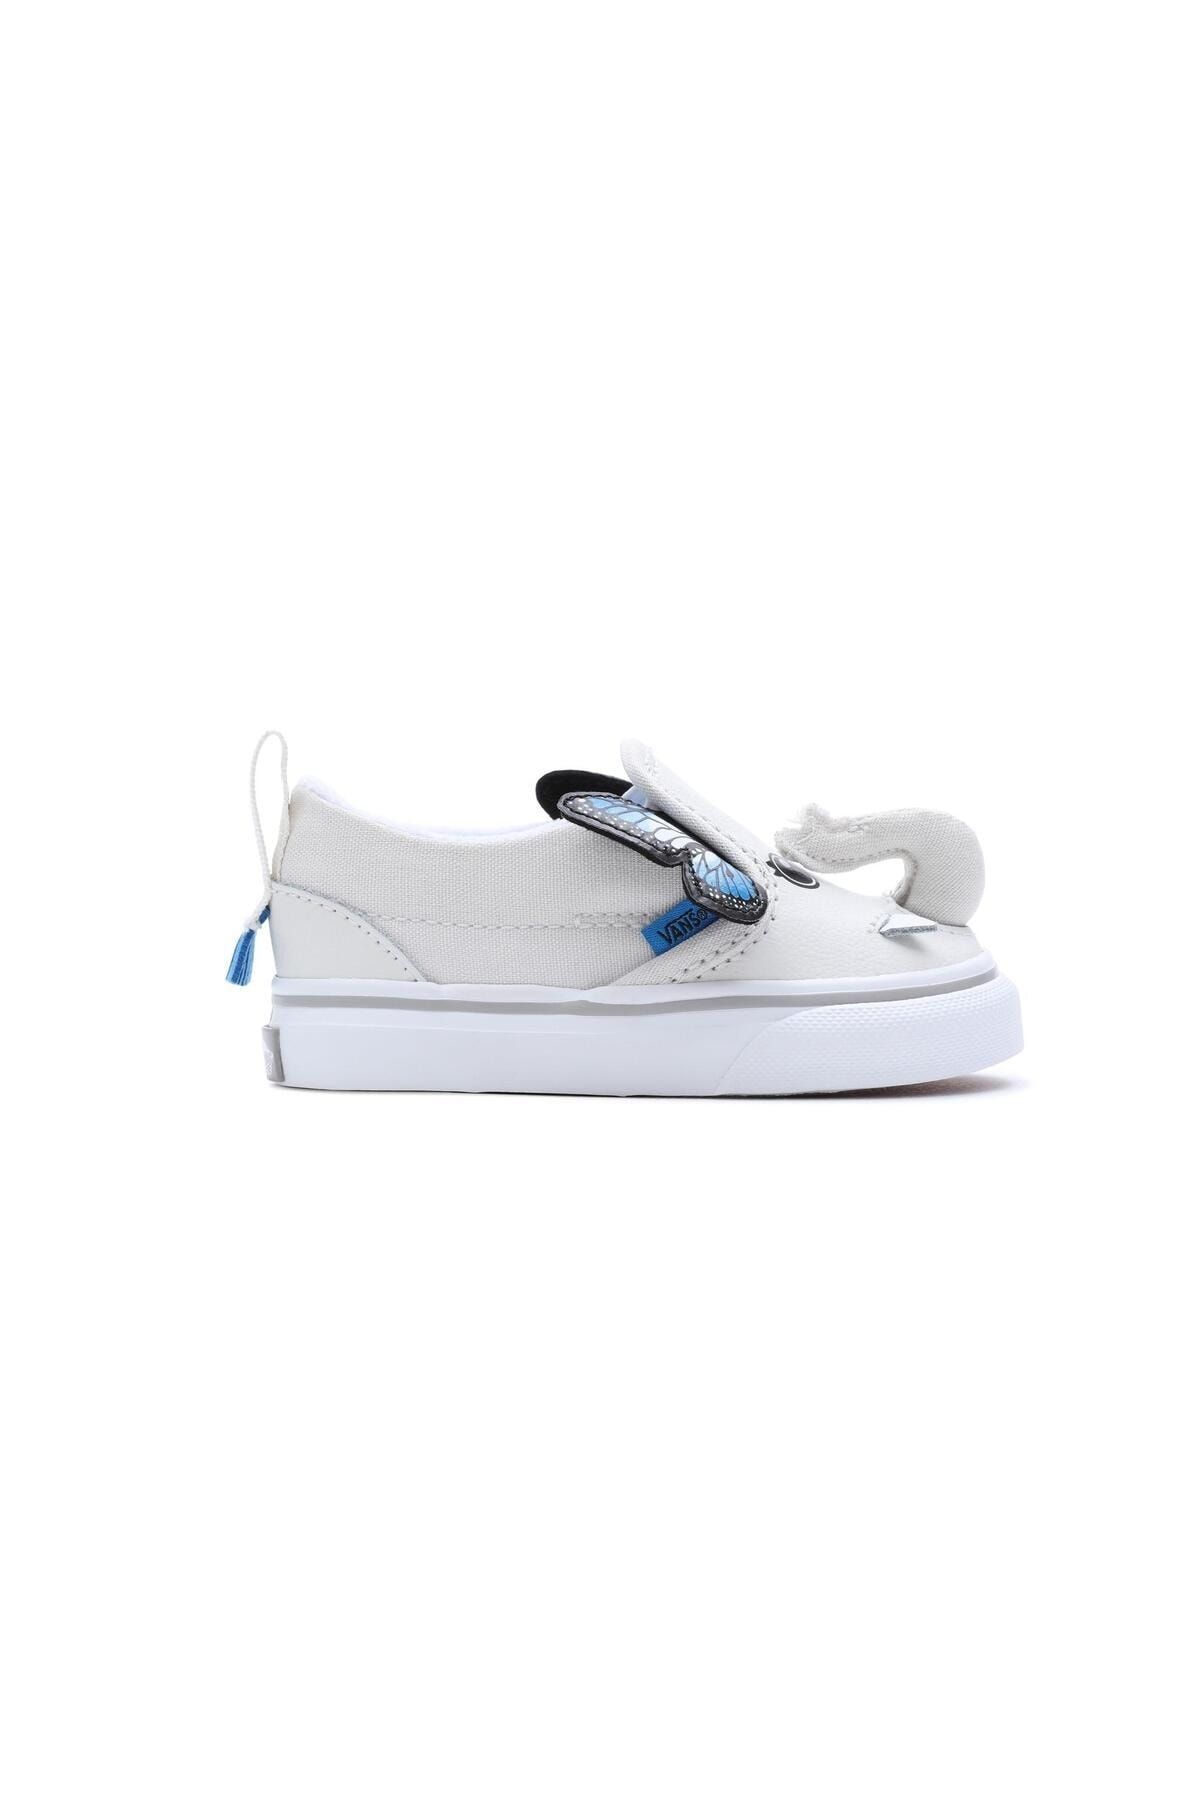 Vans Slip-On V Elephantastic Beyaz Kız Çocuk Spor Ayakkabı